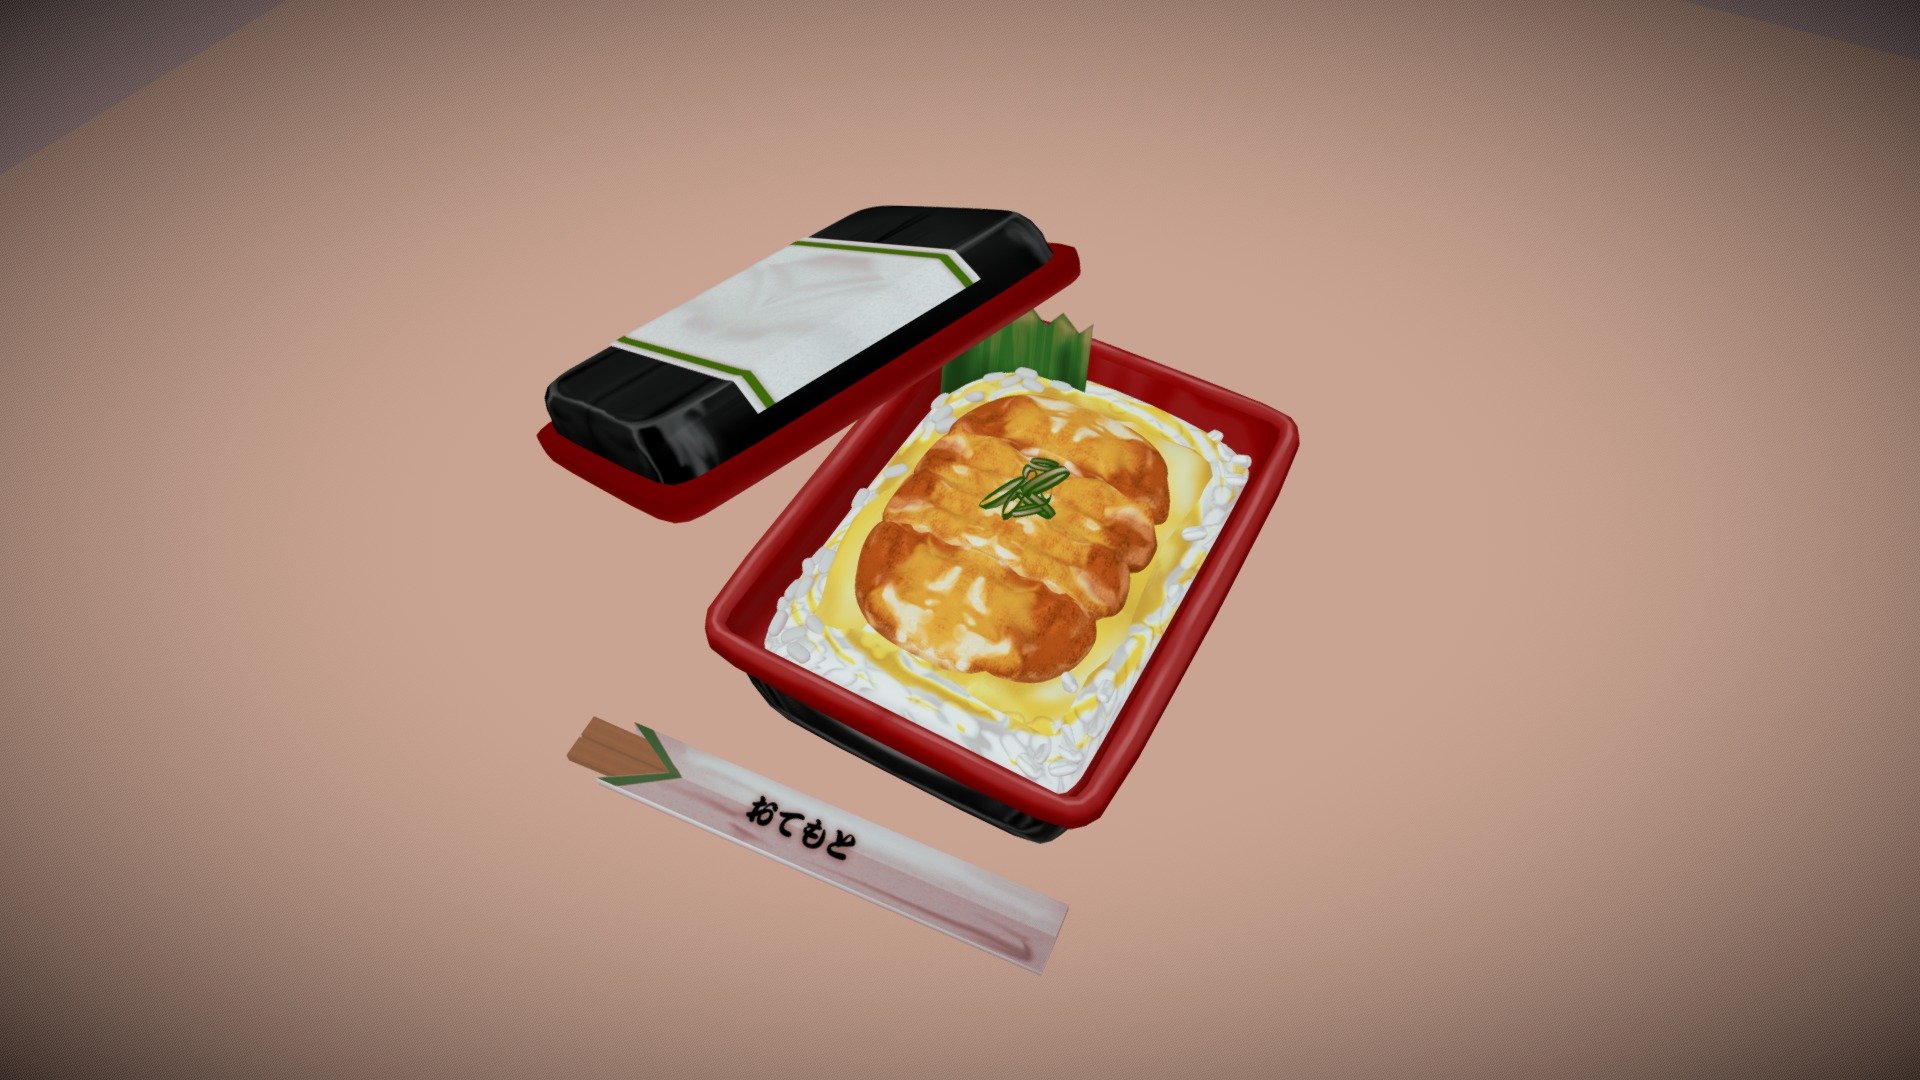 見てくれた方、ありがとうございます。
日本の一般的なメニュー、「カツ丼」です。

美味しくて大好きです。

BlenderとPhotoshopでつくりました。 - 日本の食べ物　カツ丼 - 3D model by uniko 3d model